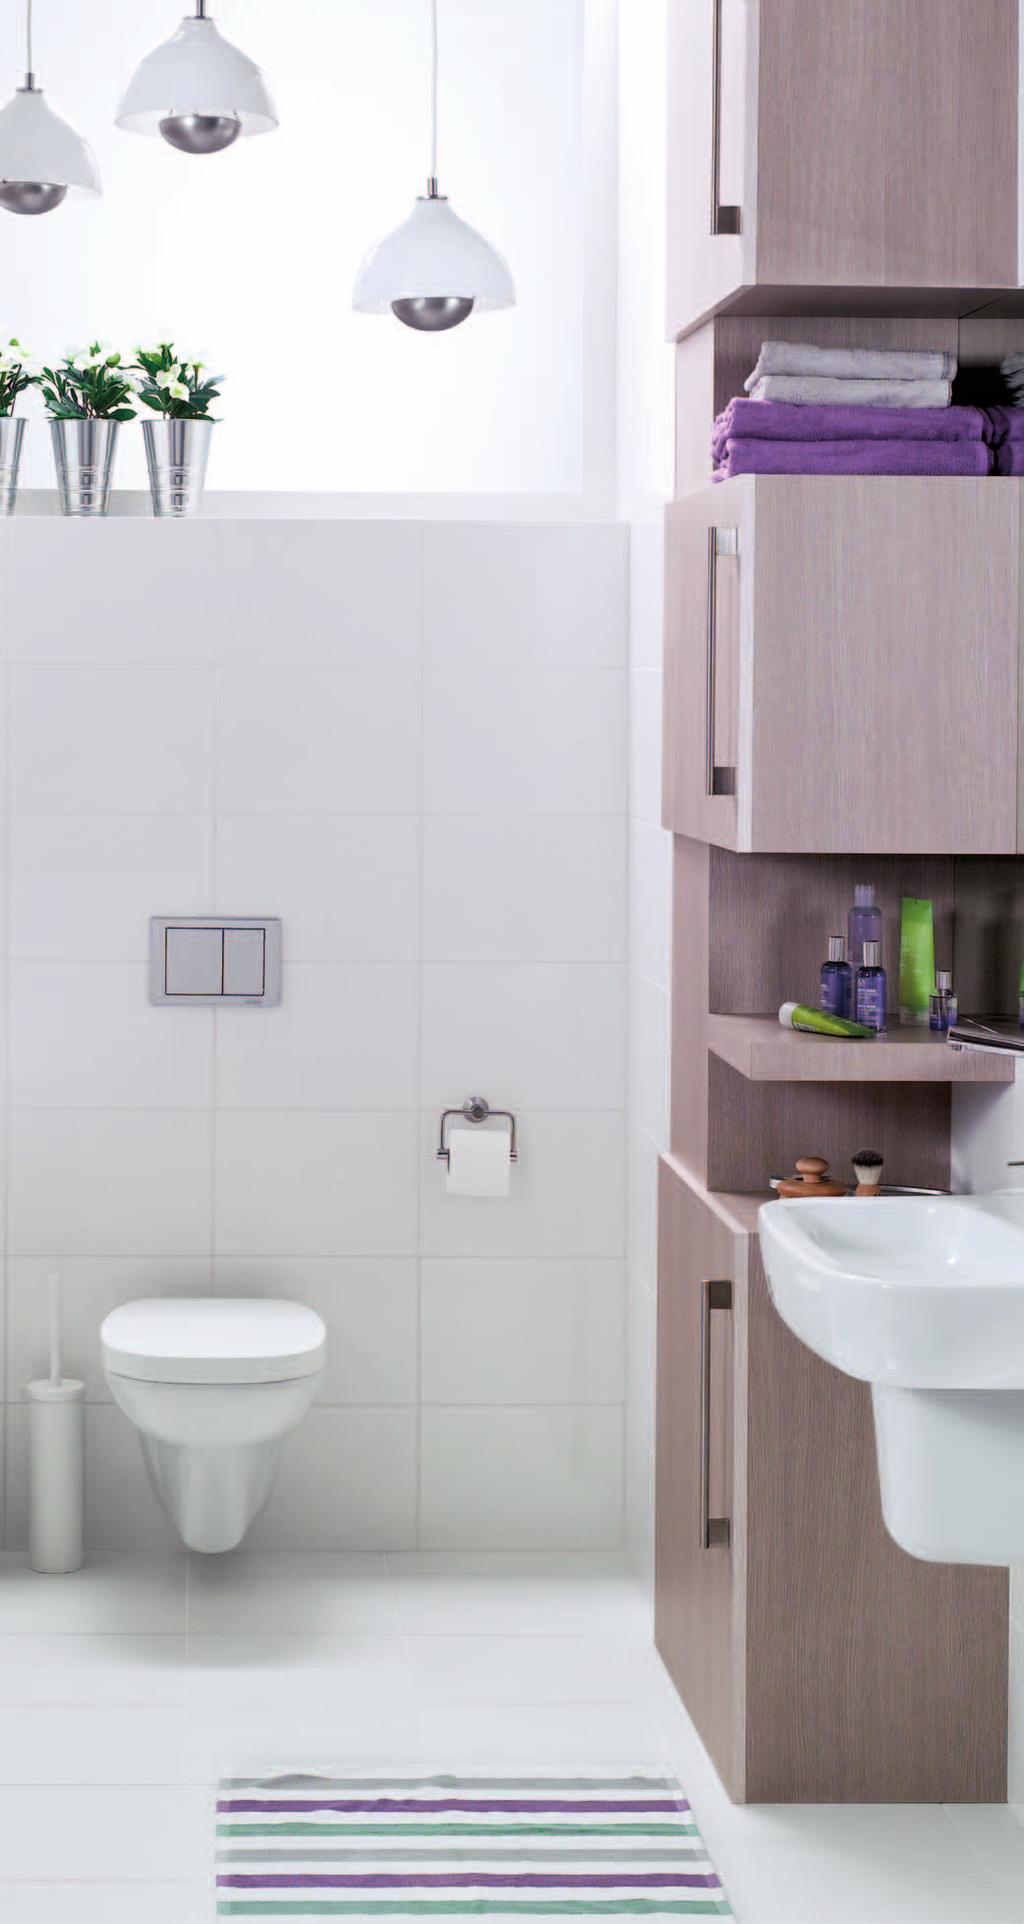 Sanitair van SaniNobel In badkamer en toilet is gekozen voor de badkamerserie van SaniNobel, een serie met kwaliteit en functionaliteit als